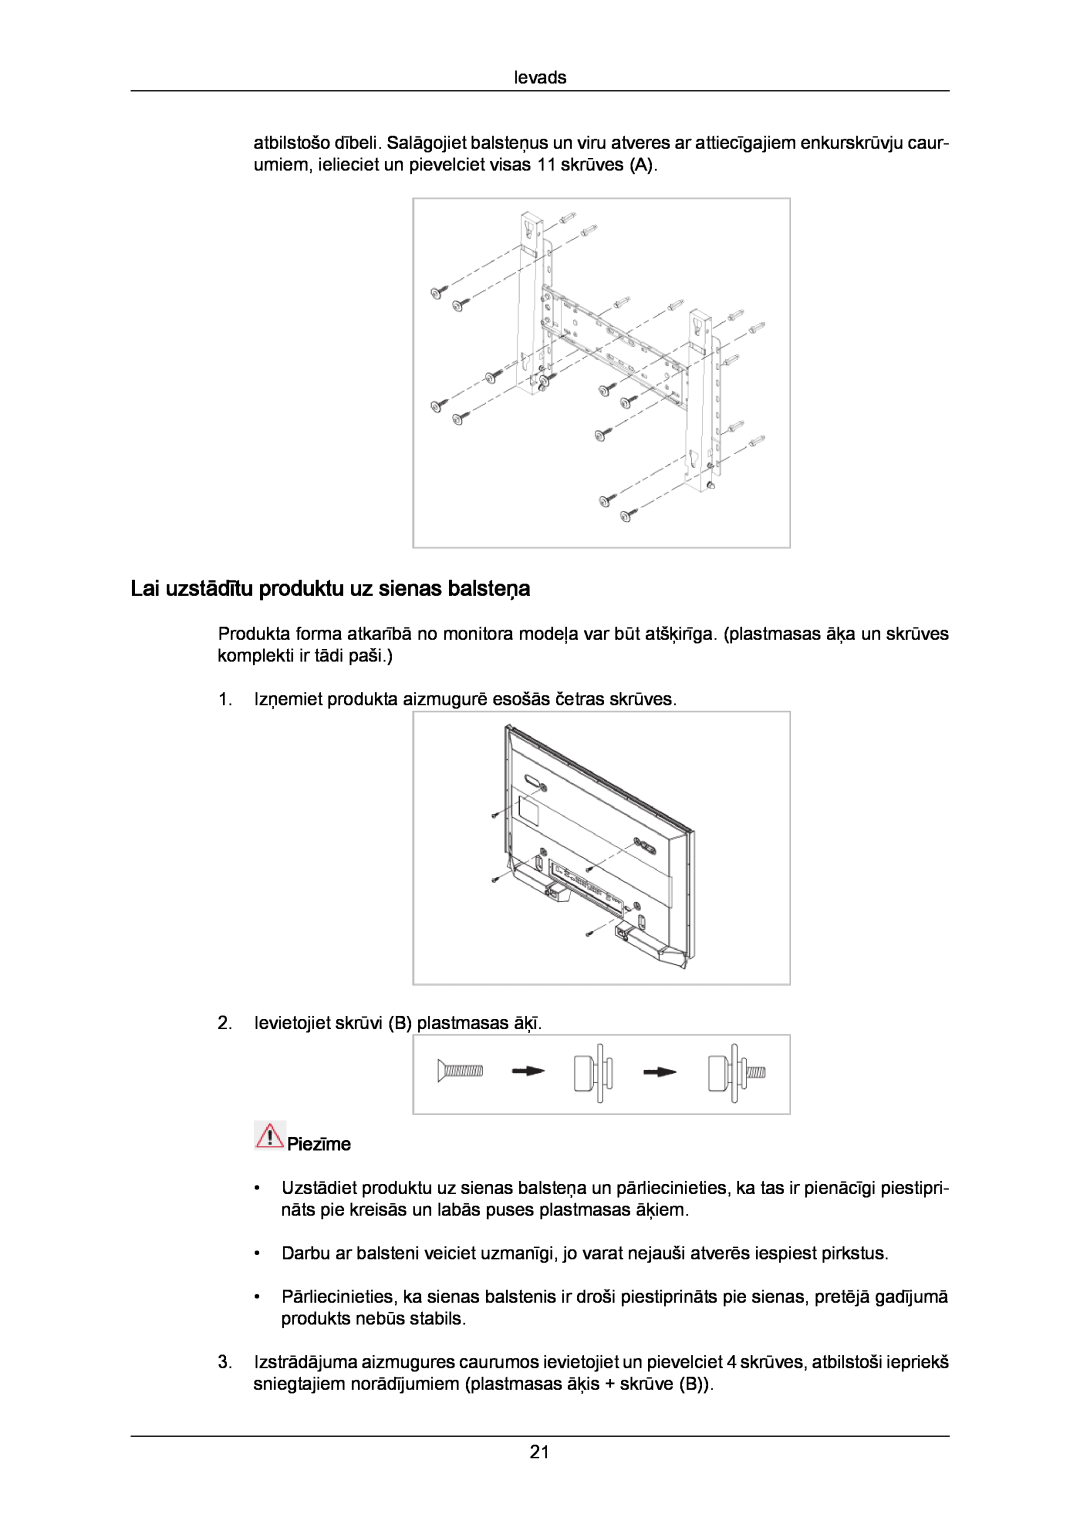 Samsung PH63KPFLBF/EN, PH50KPPLBF/EN manual Lai uzstādītu produktu uz sienas balsteņa, Piezīme 